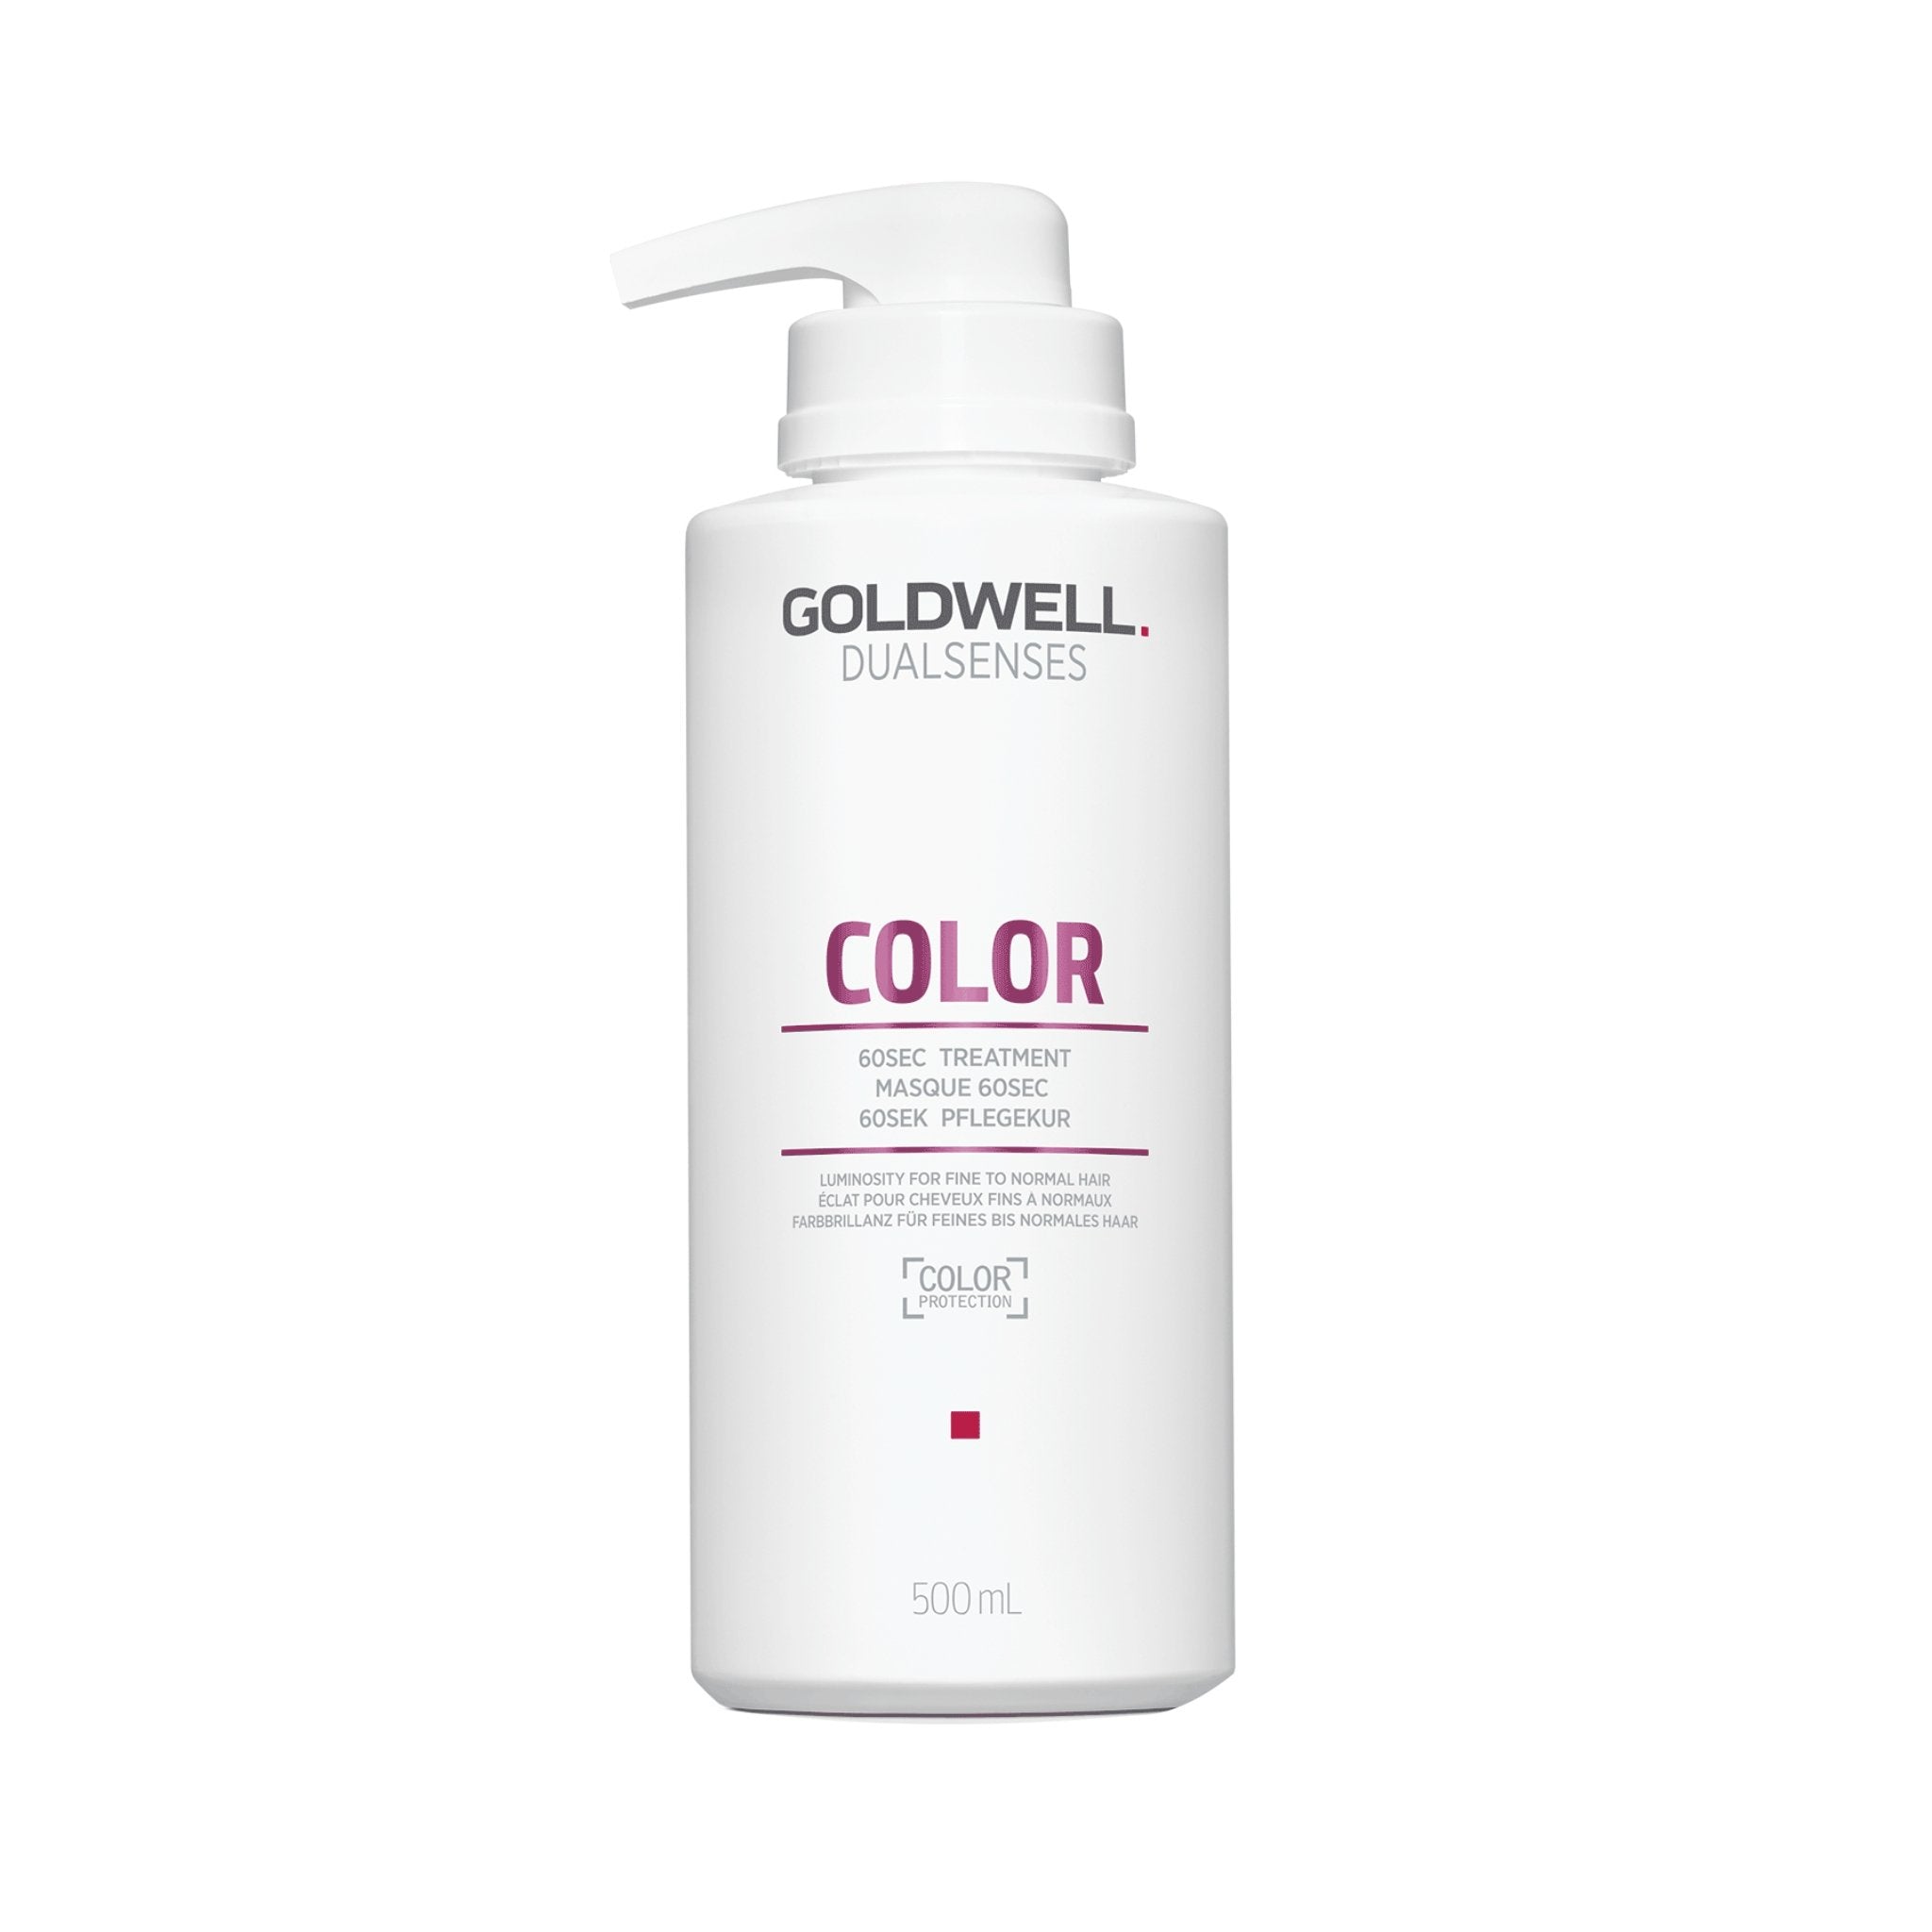 Goldwell. Dual Senses Traitement 60 secondes Color - 500 ml - Concept C. Shop